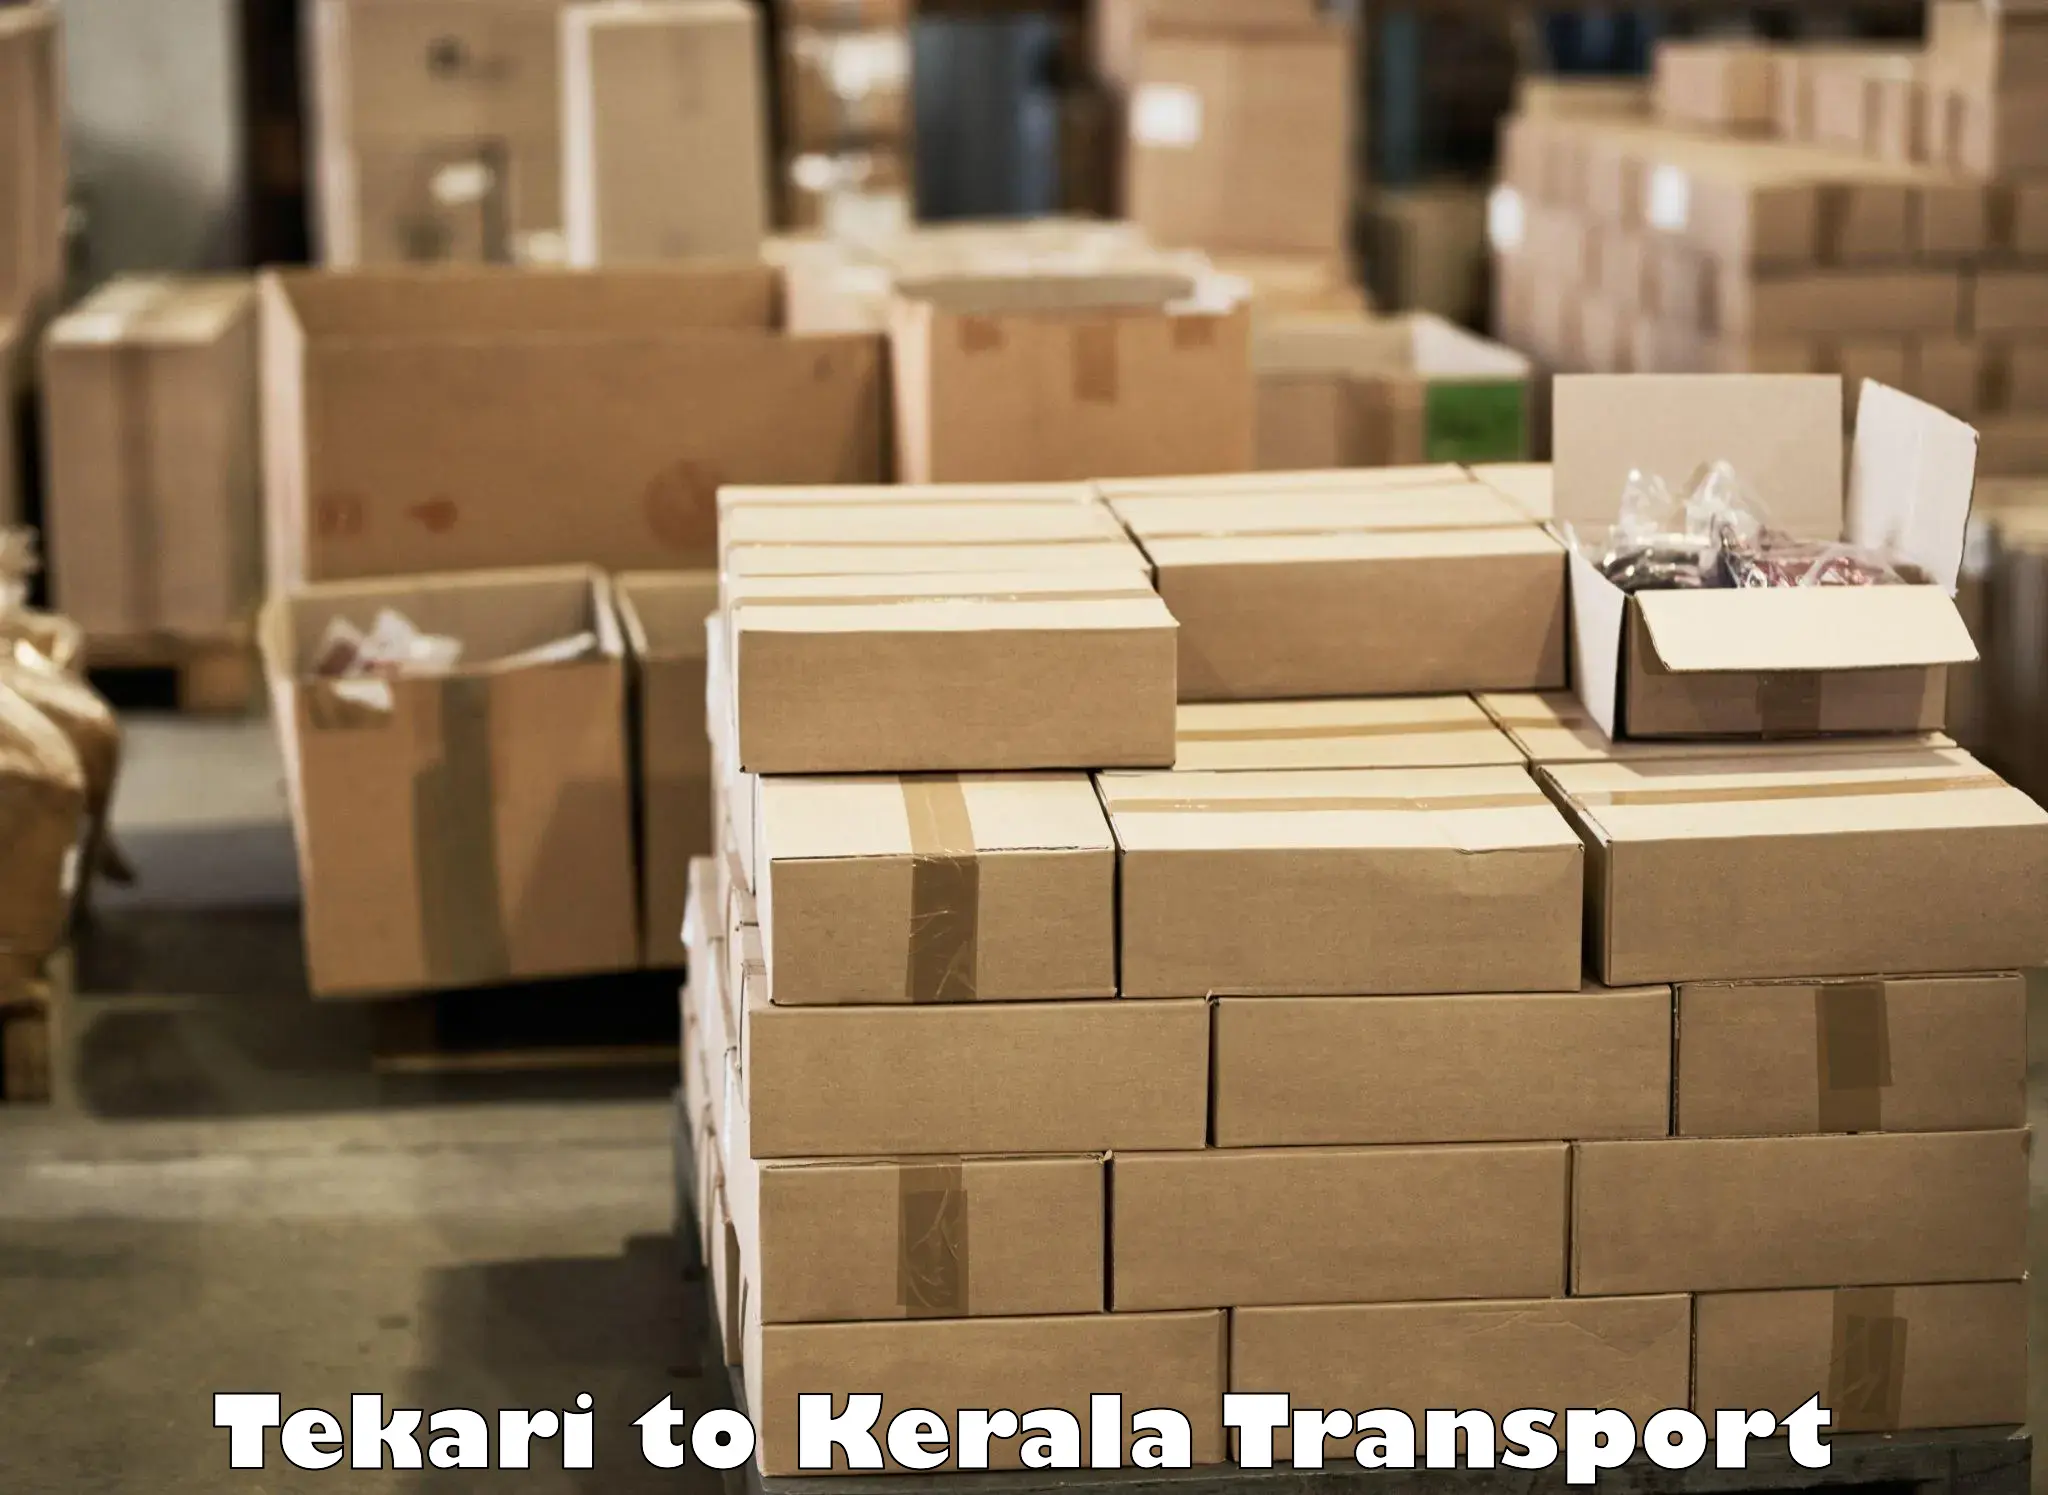 Nearest transport service Tekari to Nilambur